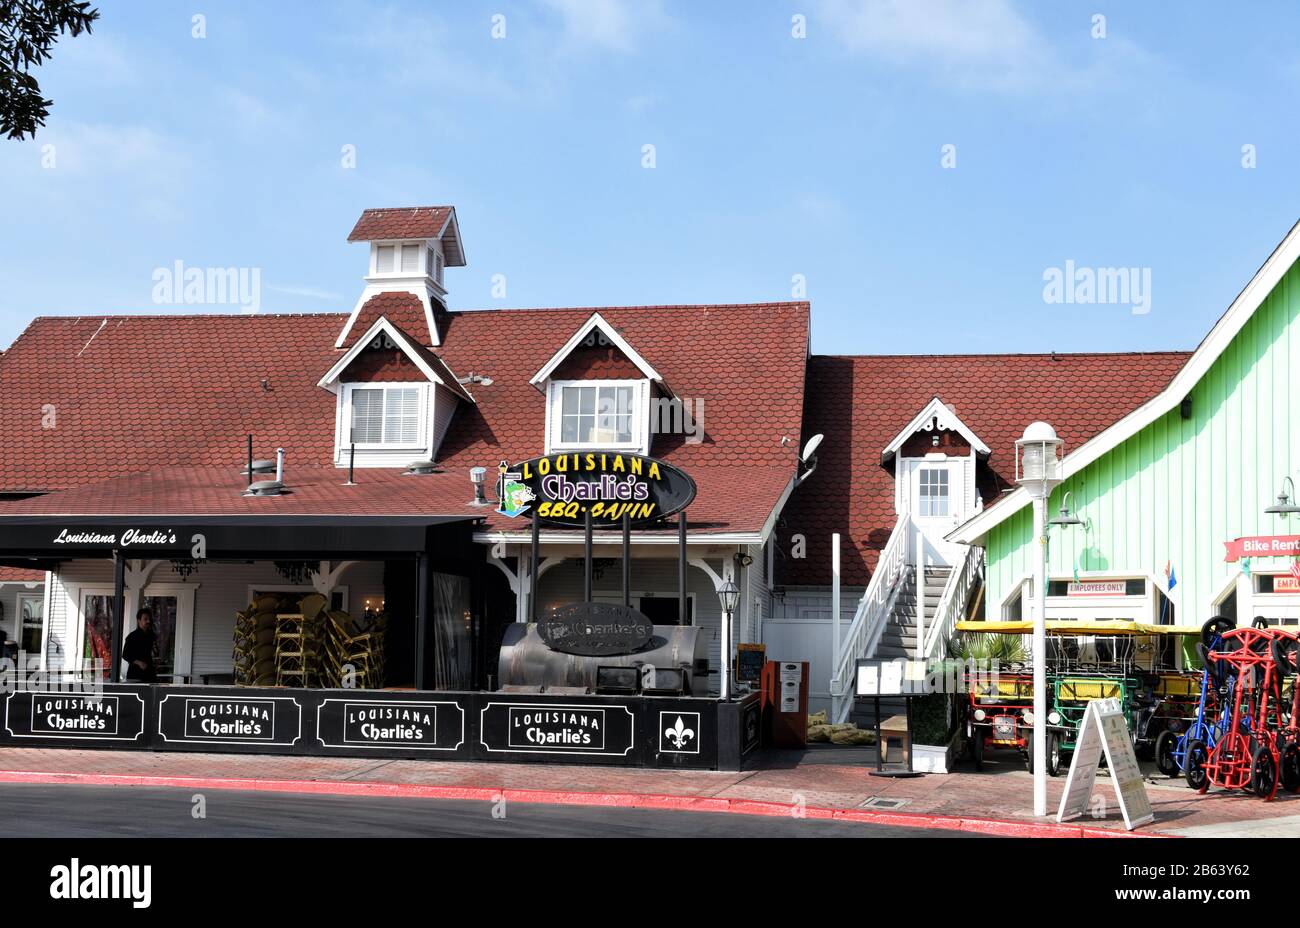 Long BEACH, CALIFORNIA - 06 MAR 2020: Il ristorante del Louisiana Charlie's allo Shoreline Village offre barbecue e cucina in stile Cajun. Foto Stock